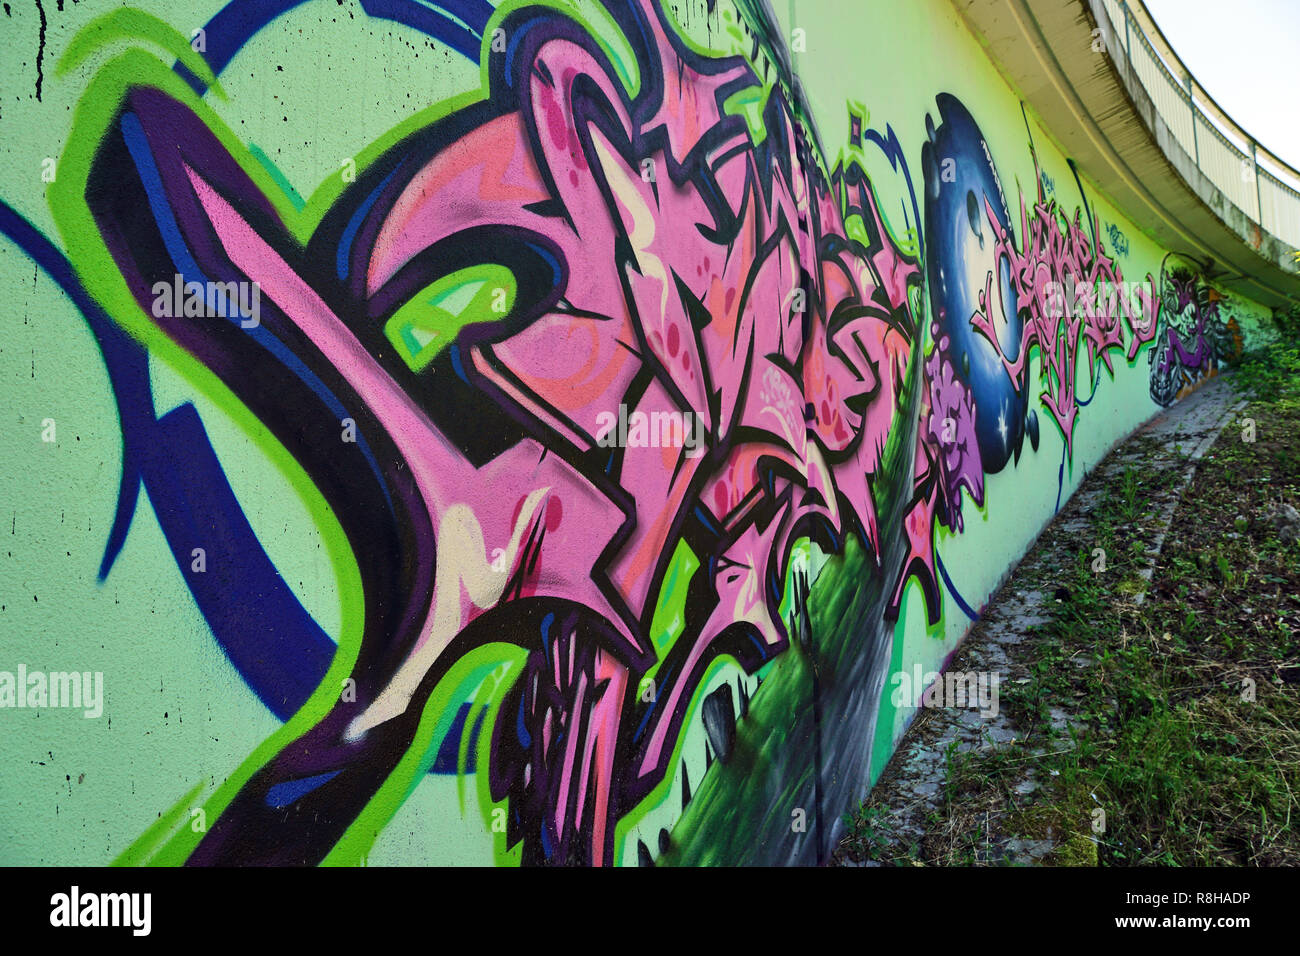 Graffiti wall, Germany Stock Photo